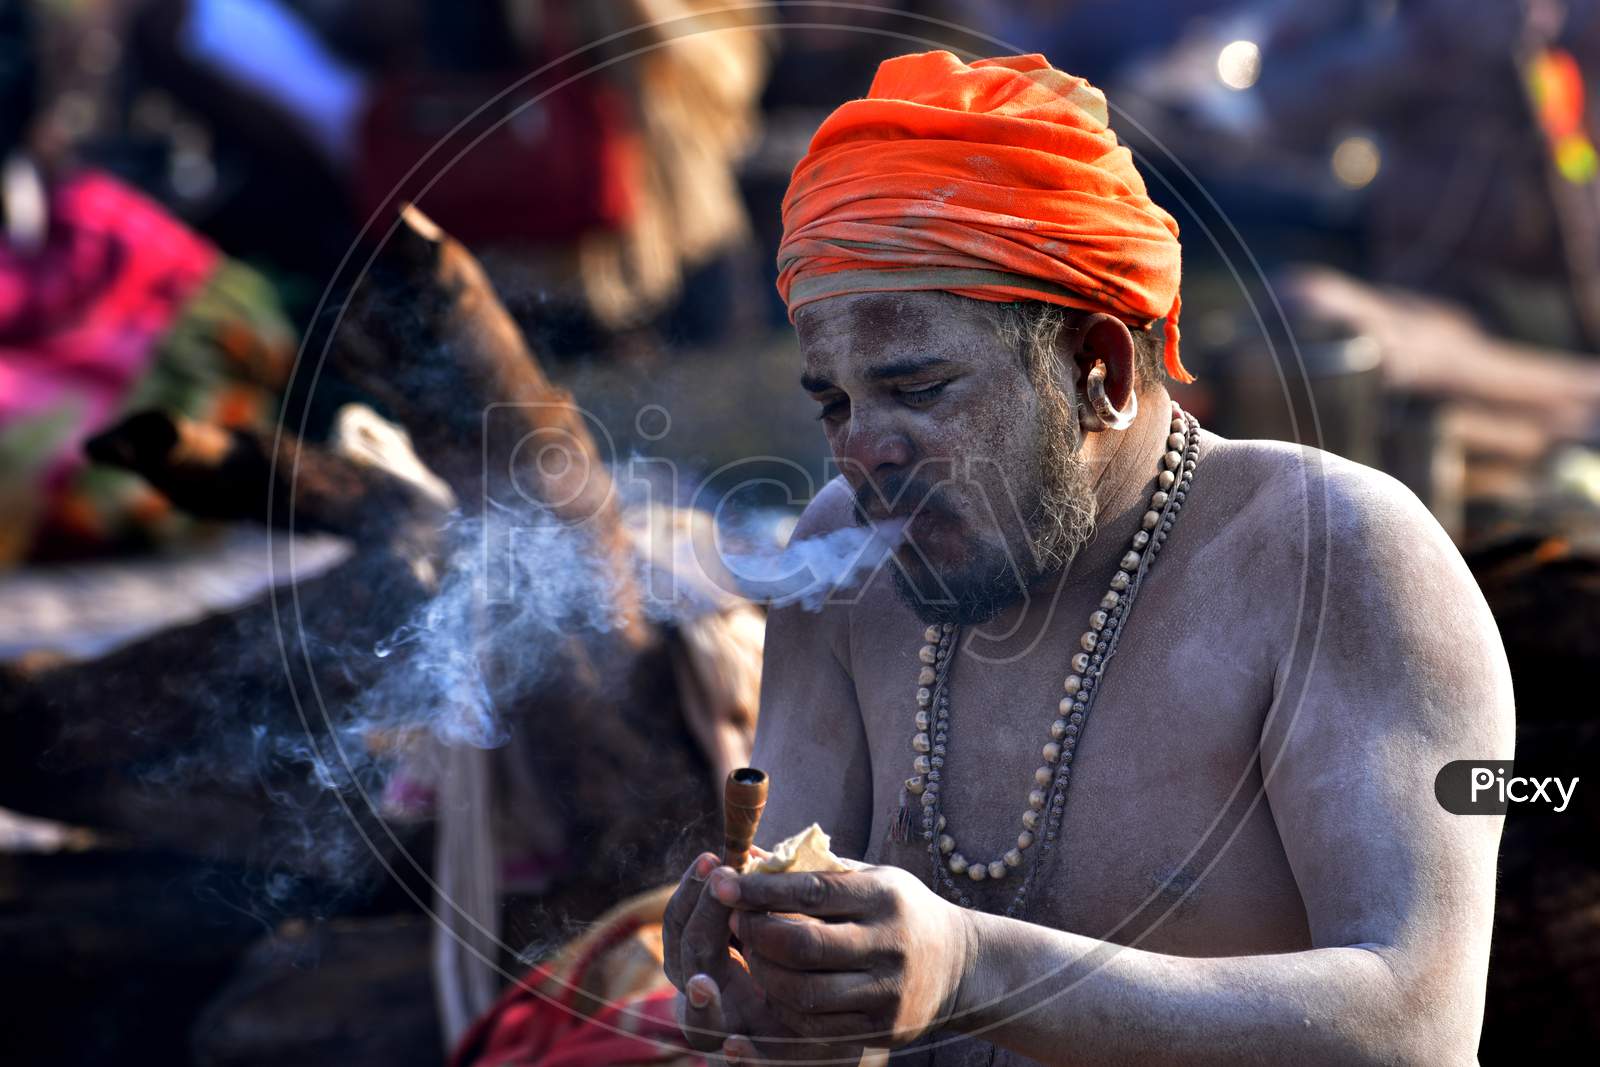 "The Smoking Sadhu"